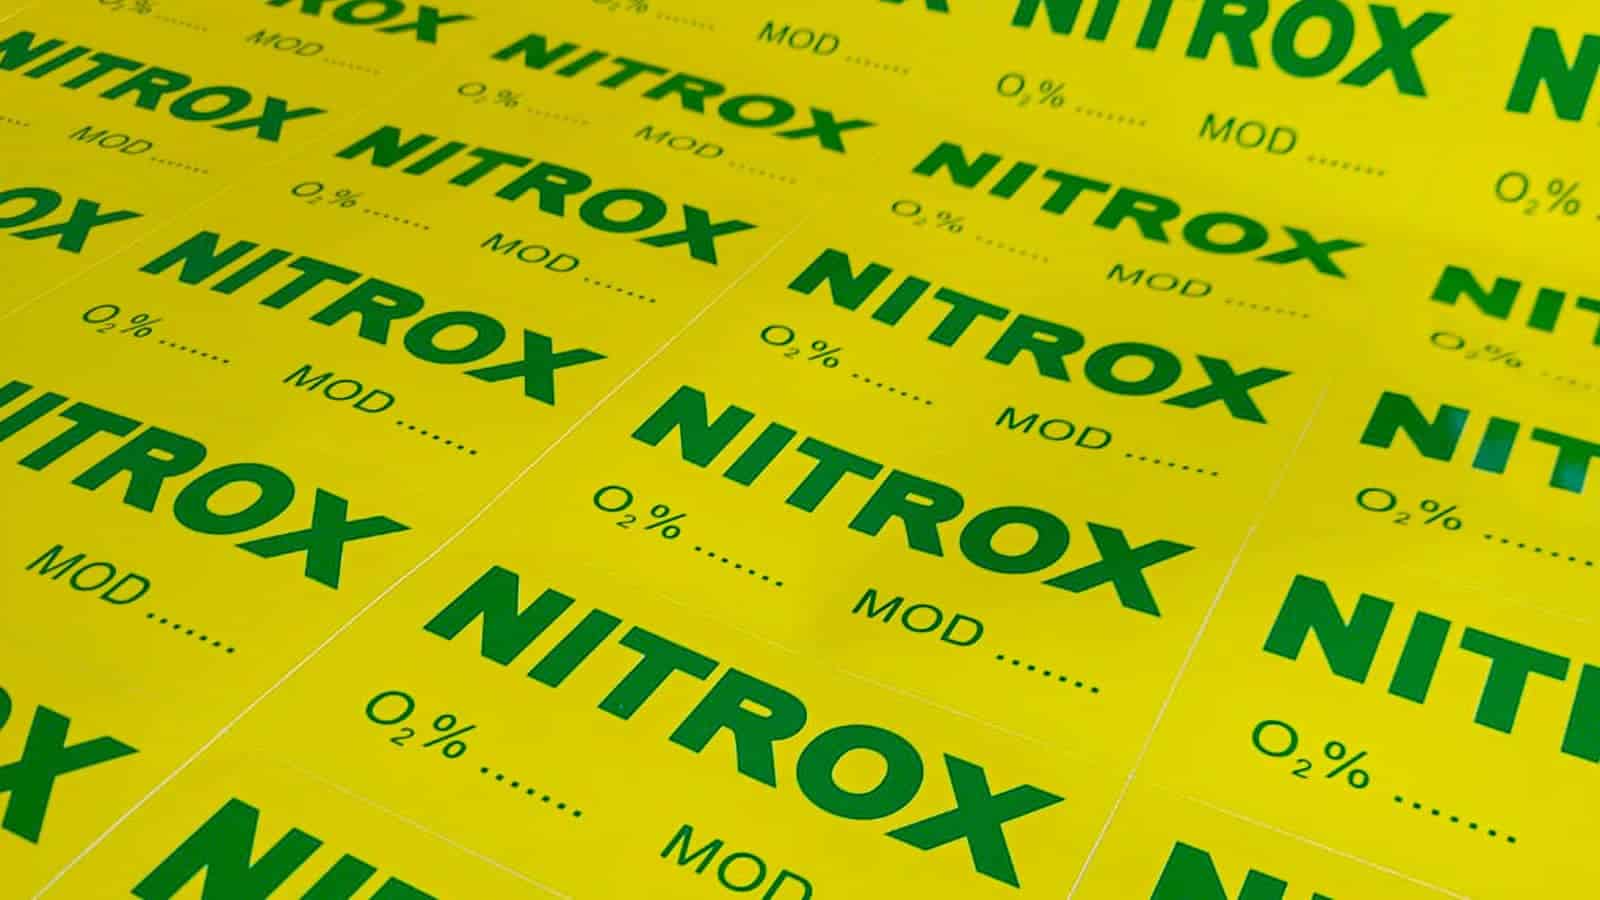 Jak obliczyć MOD dla nitroxu? 3szkoła nurkowania kraków